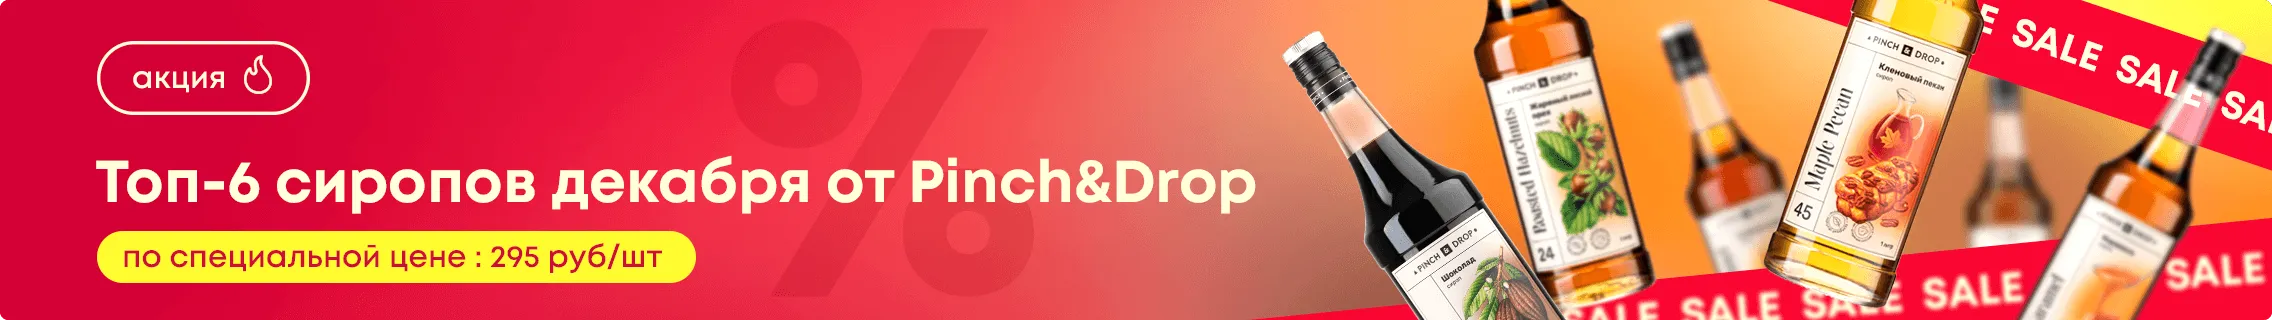 Топ-6 сиропов декабря от Pinch&Drop по специальной цене!